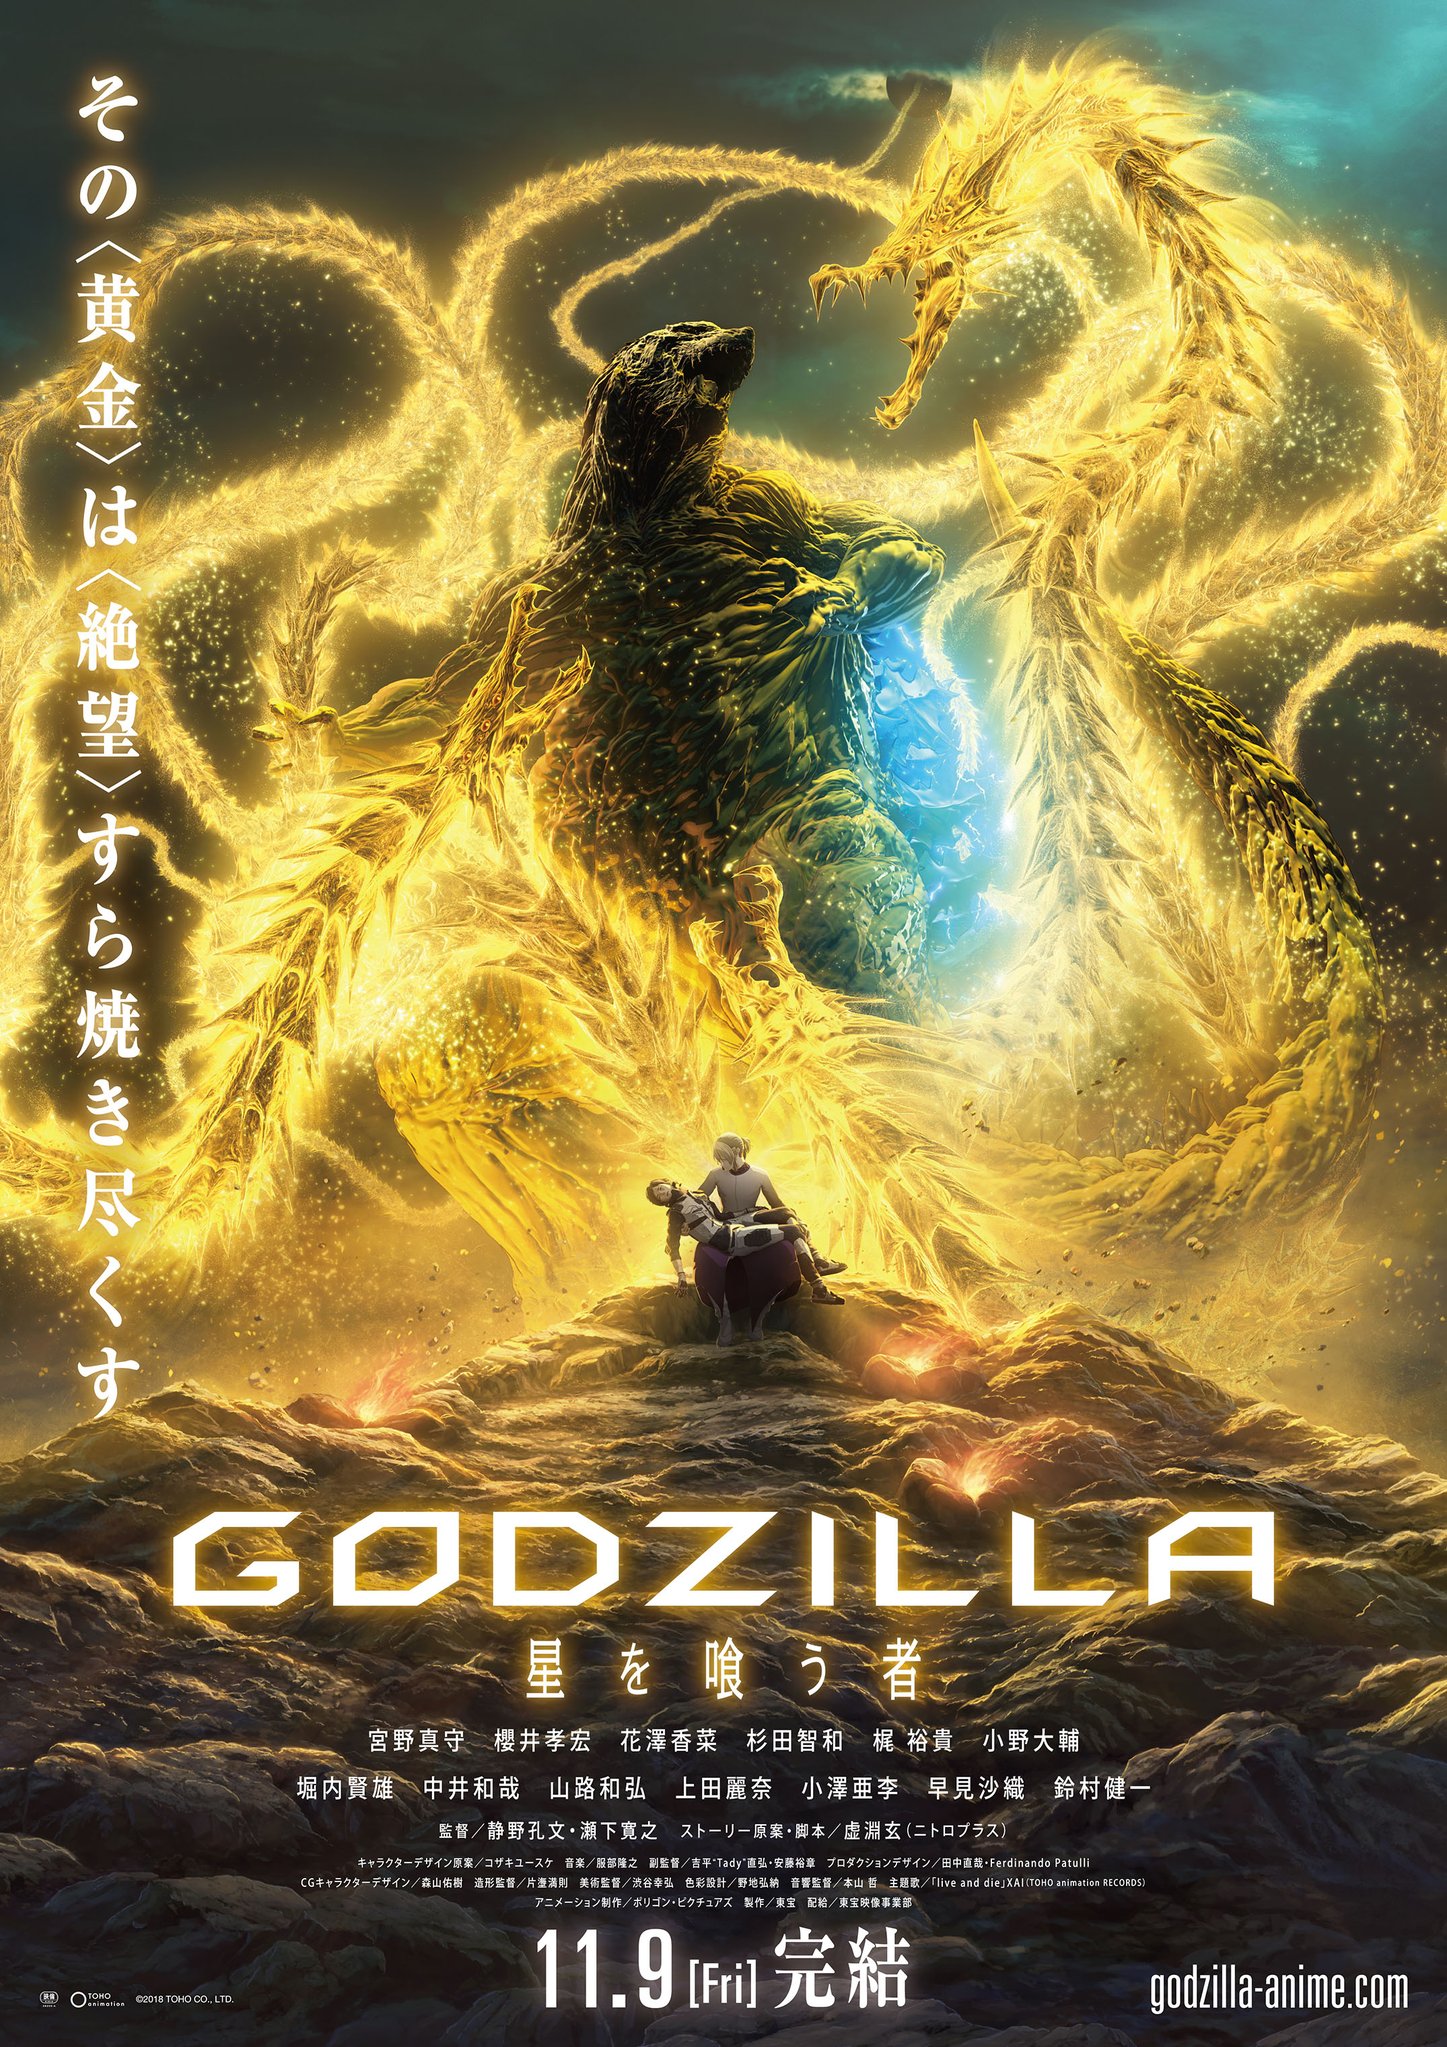 godzilla #cartoon, Godzilla Earth